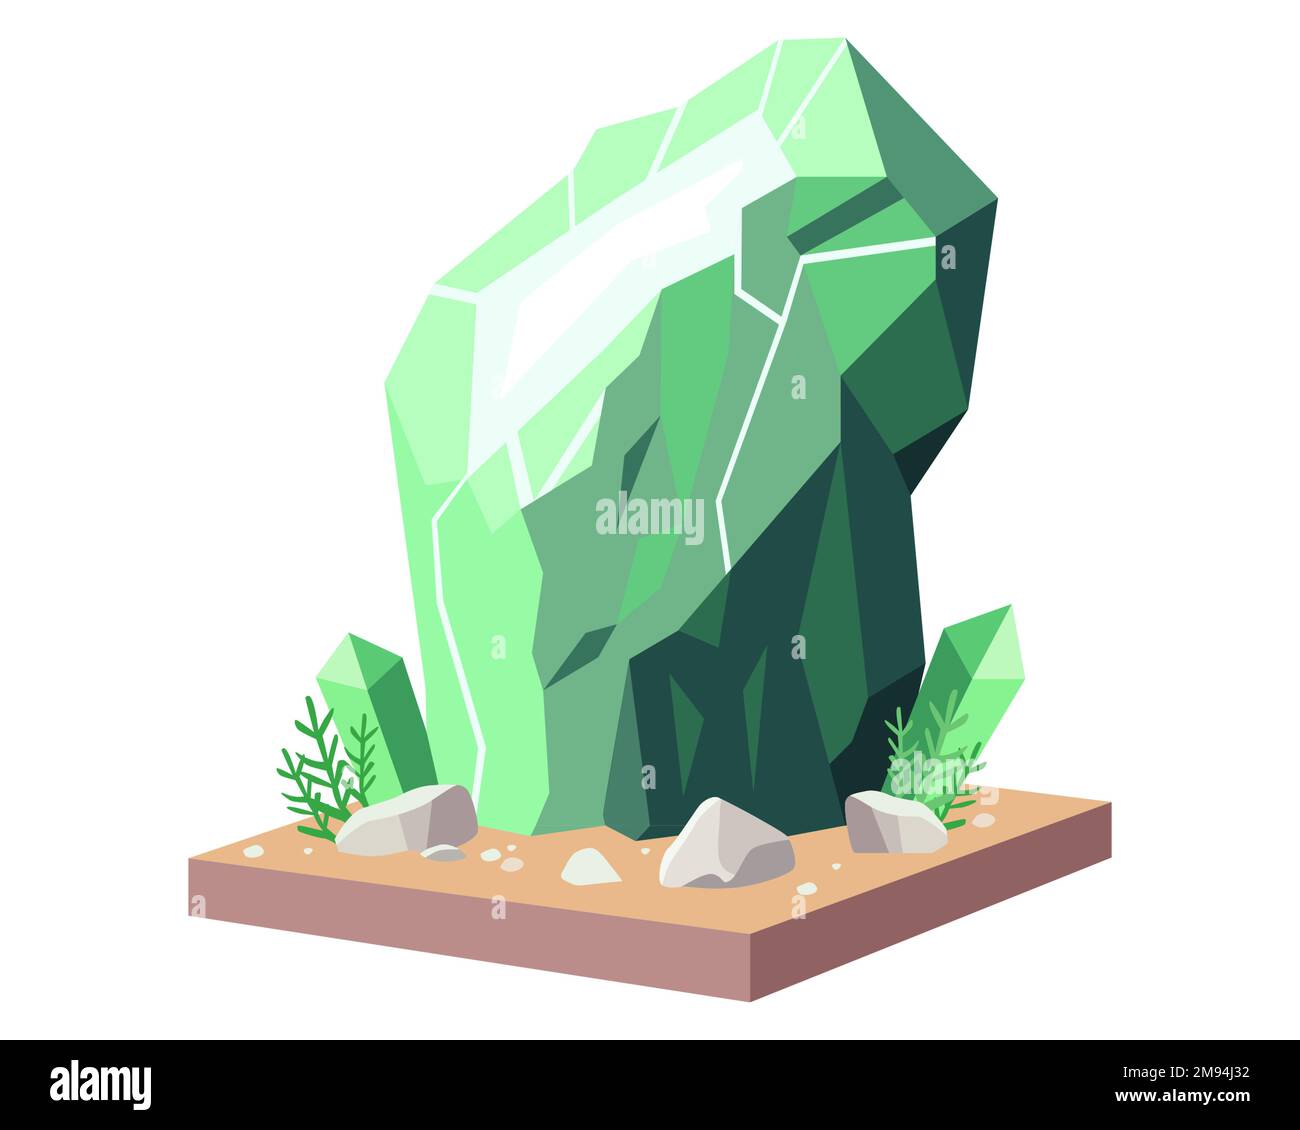 Großes grünes Mineral in der Natur. Ein wertvolles Juwel. Abbildung eines flachen Vektors. Stock Vektor